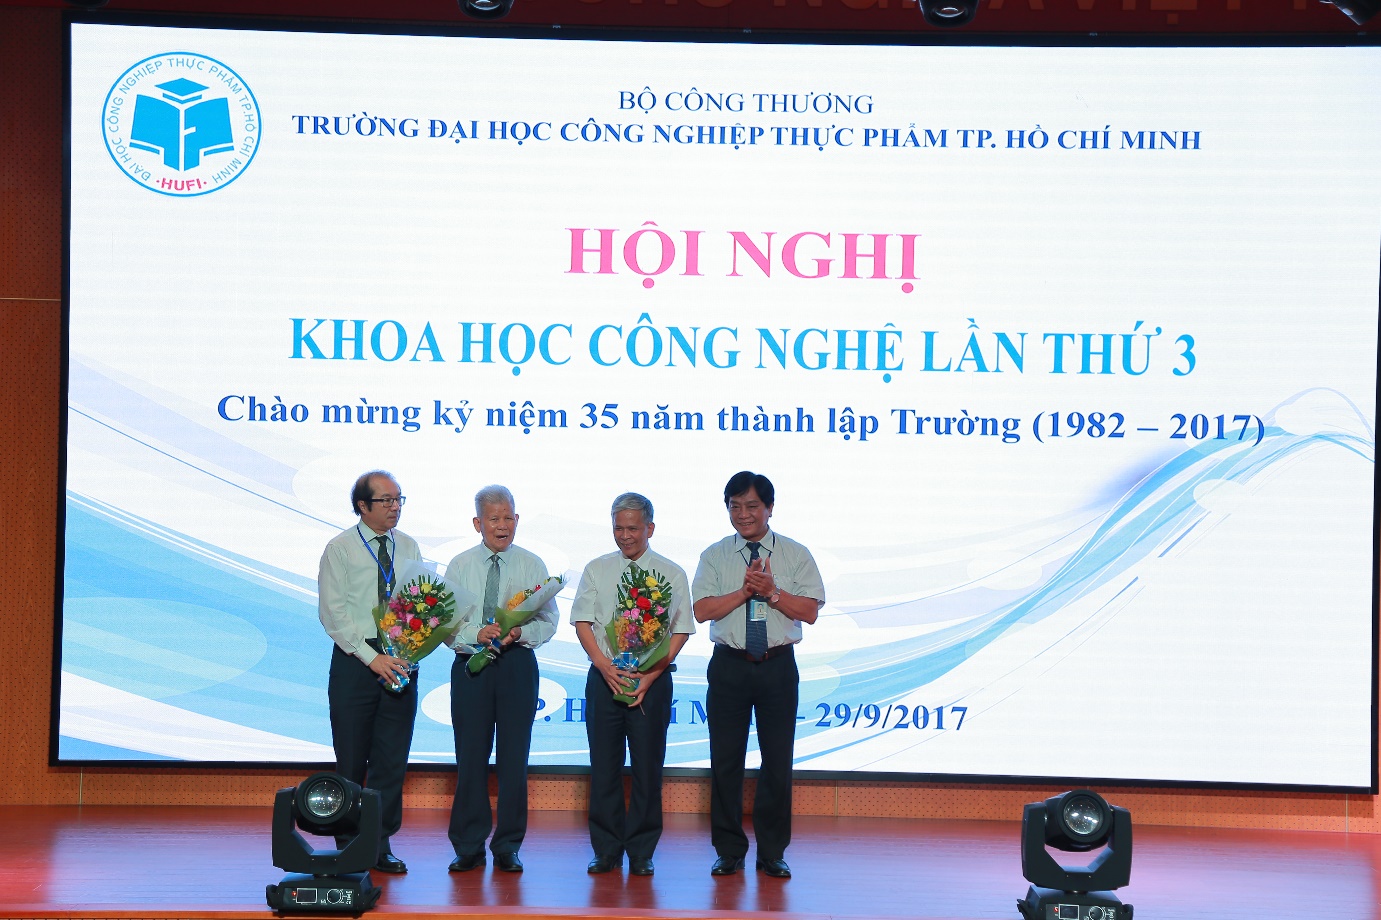 Trường Đại học Công nghiệp Thực phẩm TP. Hồ Chí Minh tổ chức Hội nghị khoa học công nghệ lần thứ ba